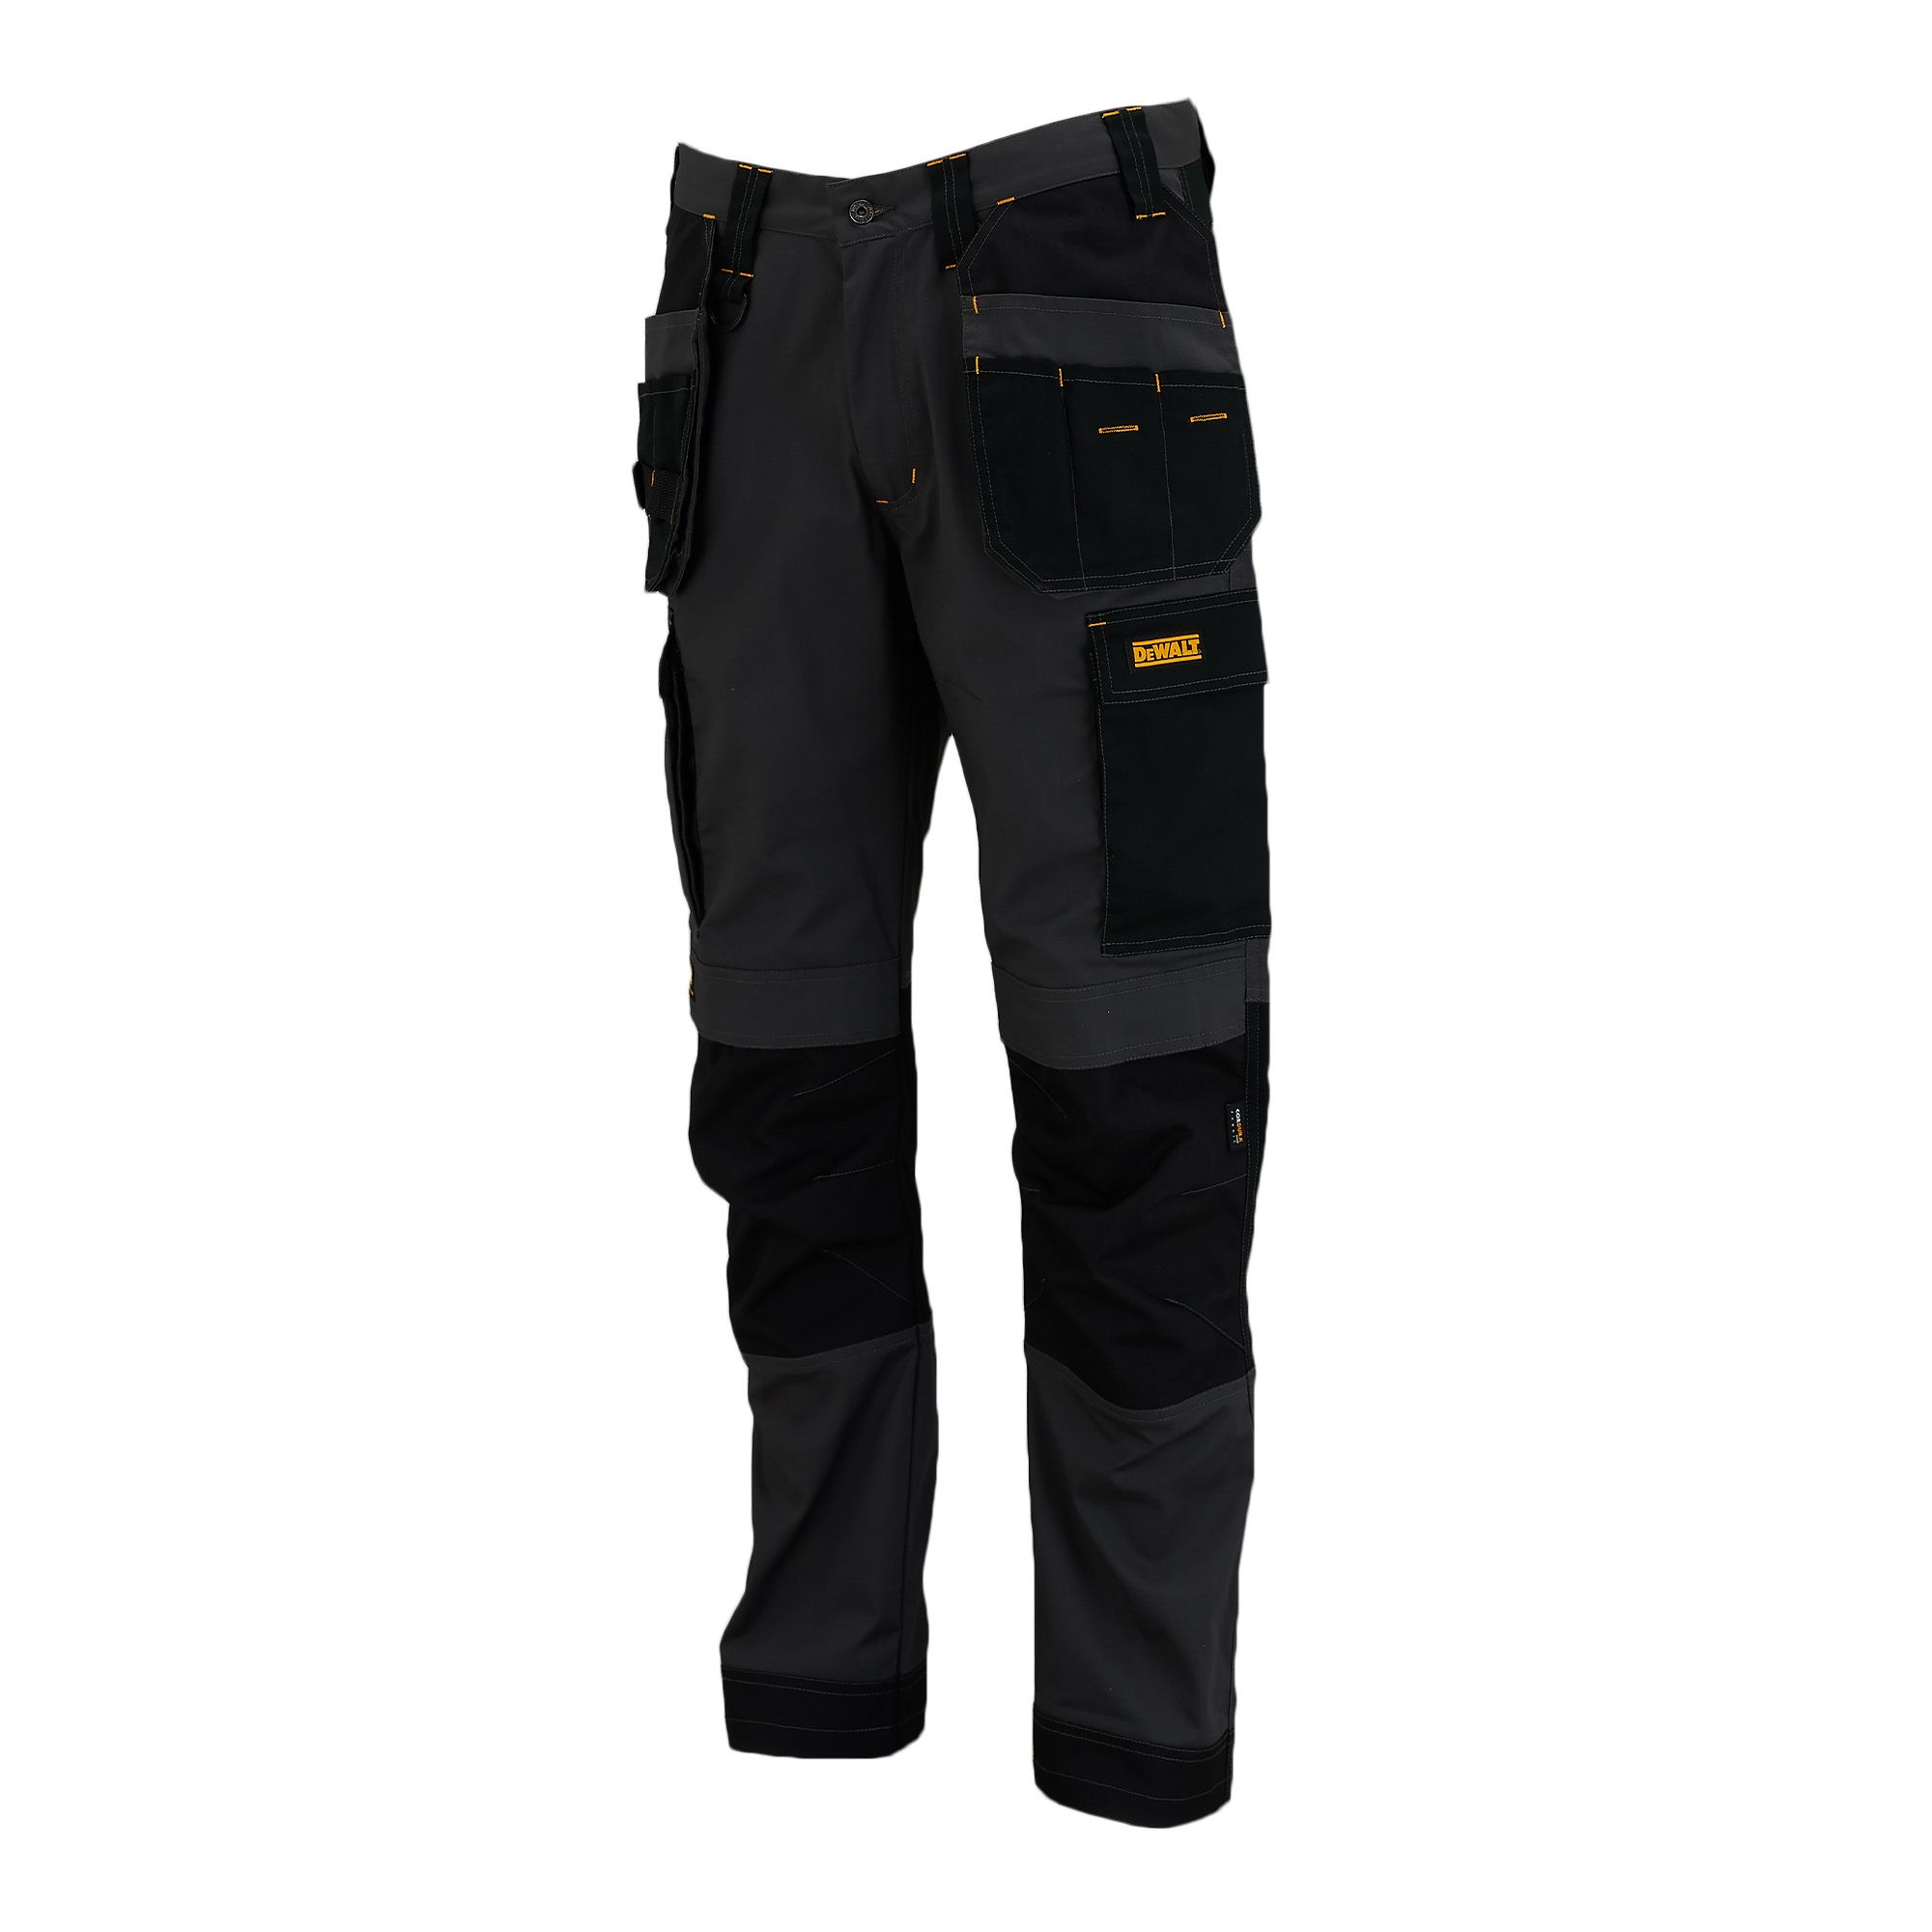 DeWalt Florida Grey & black Men's Holster pocket trousers, W34" L31"